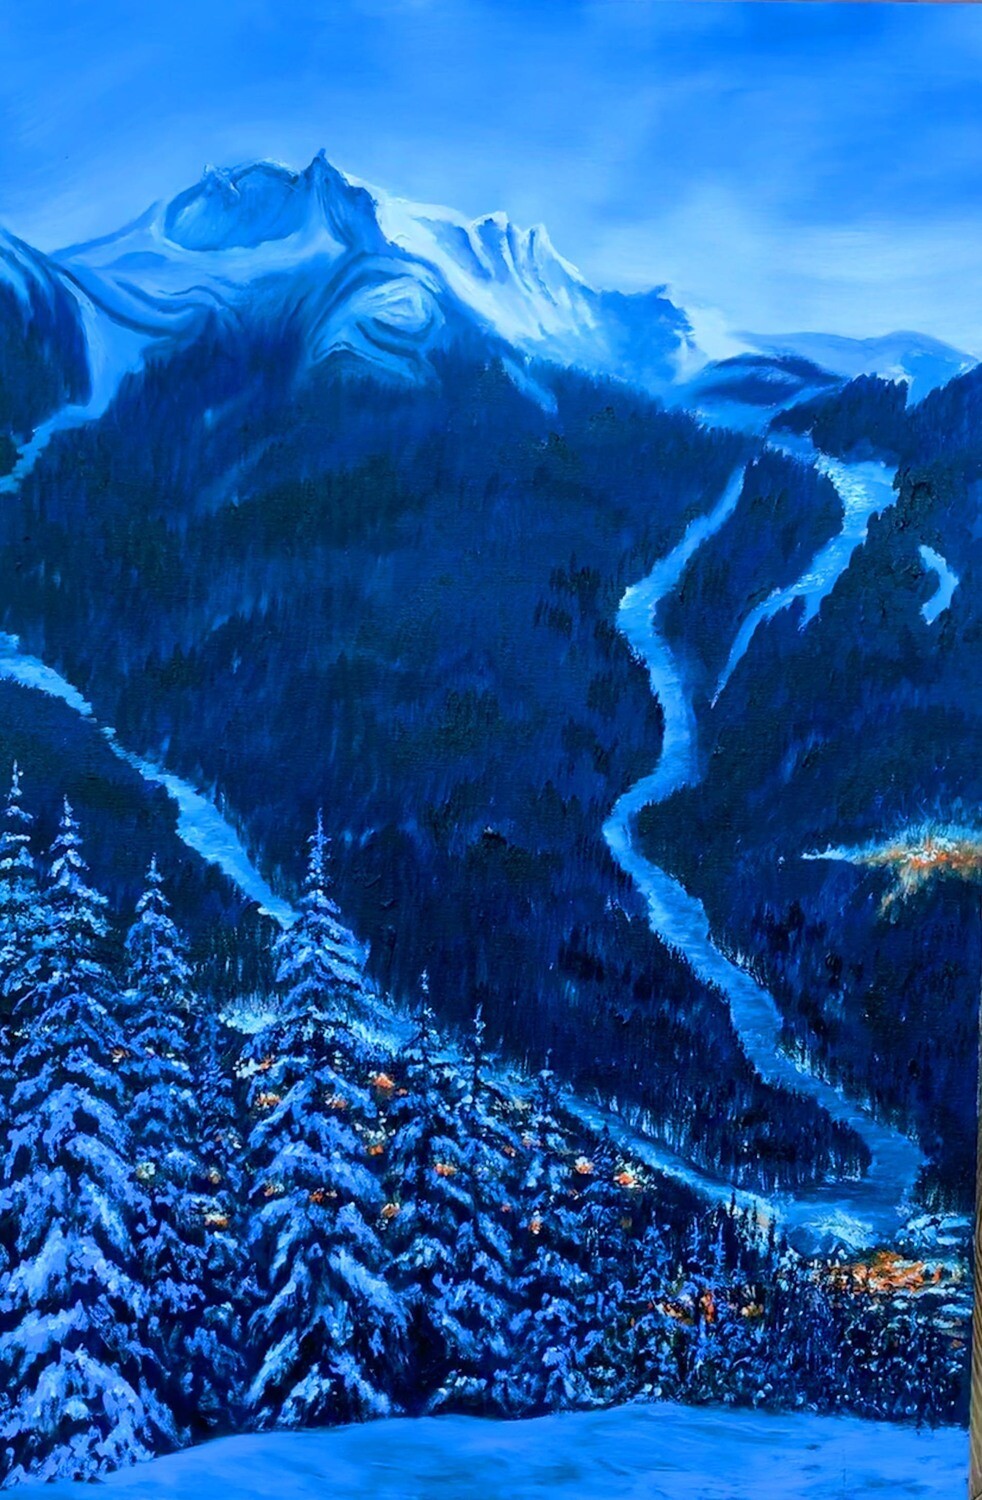 "Peak to Creek - Whistler, BC"